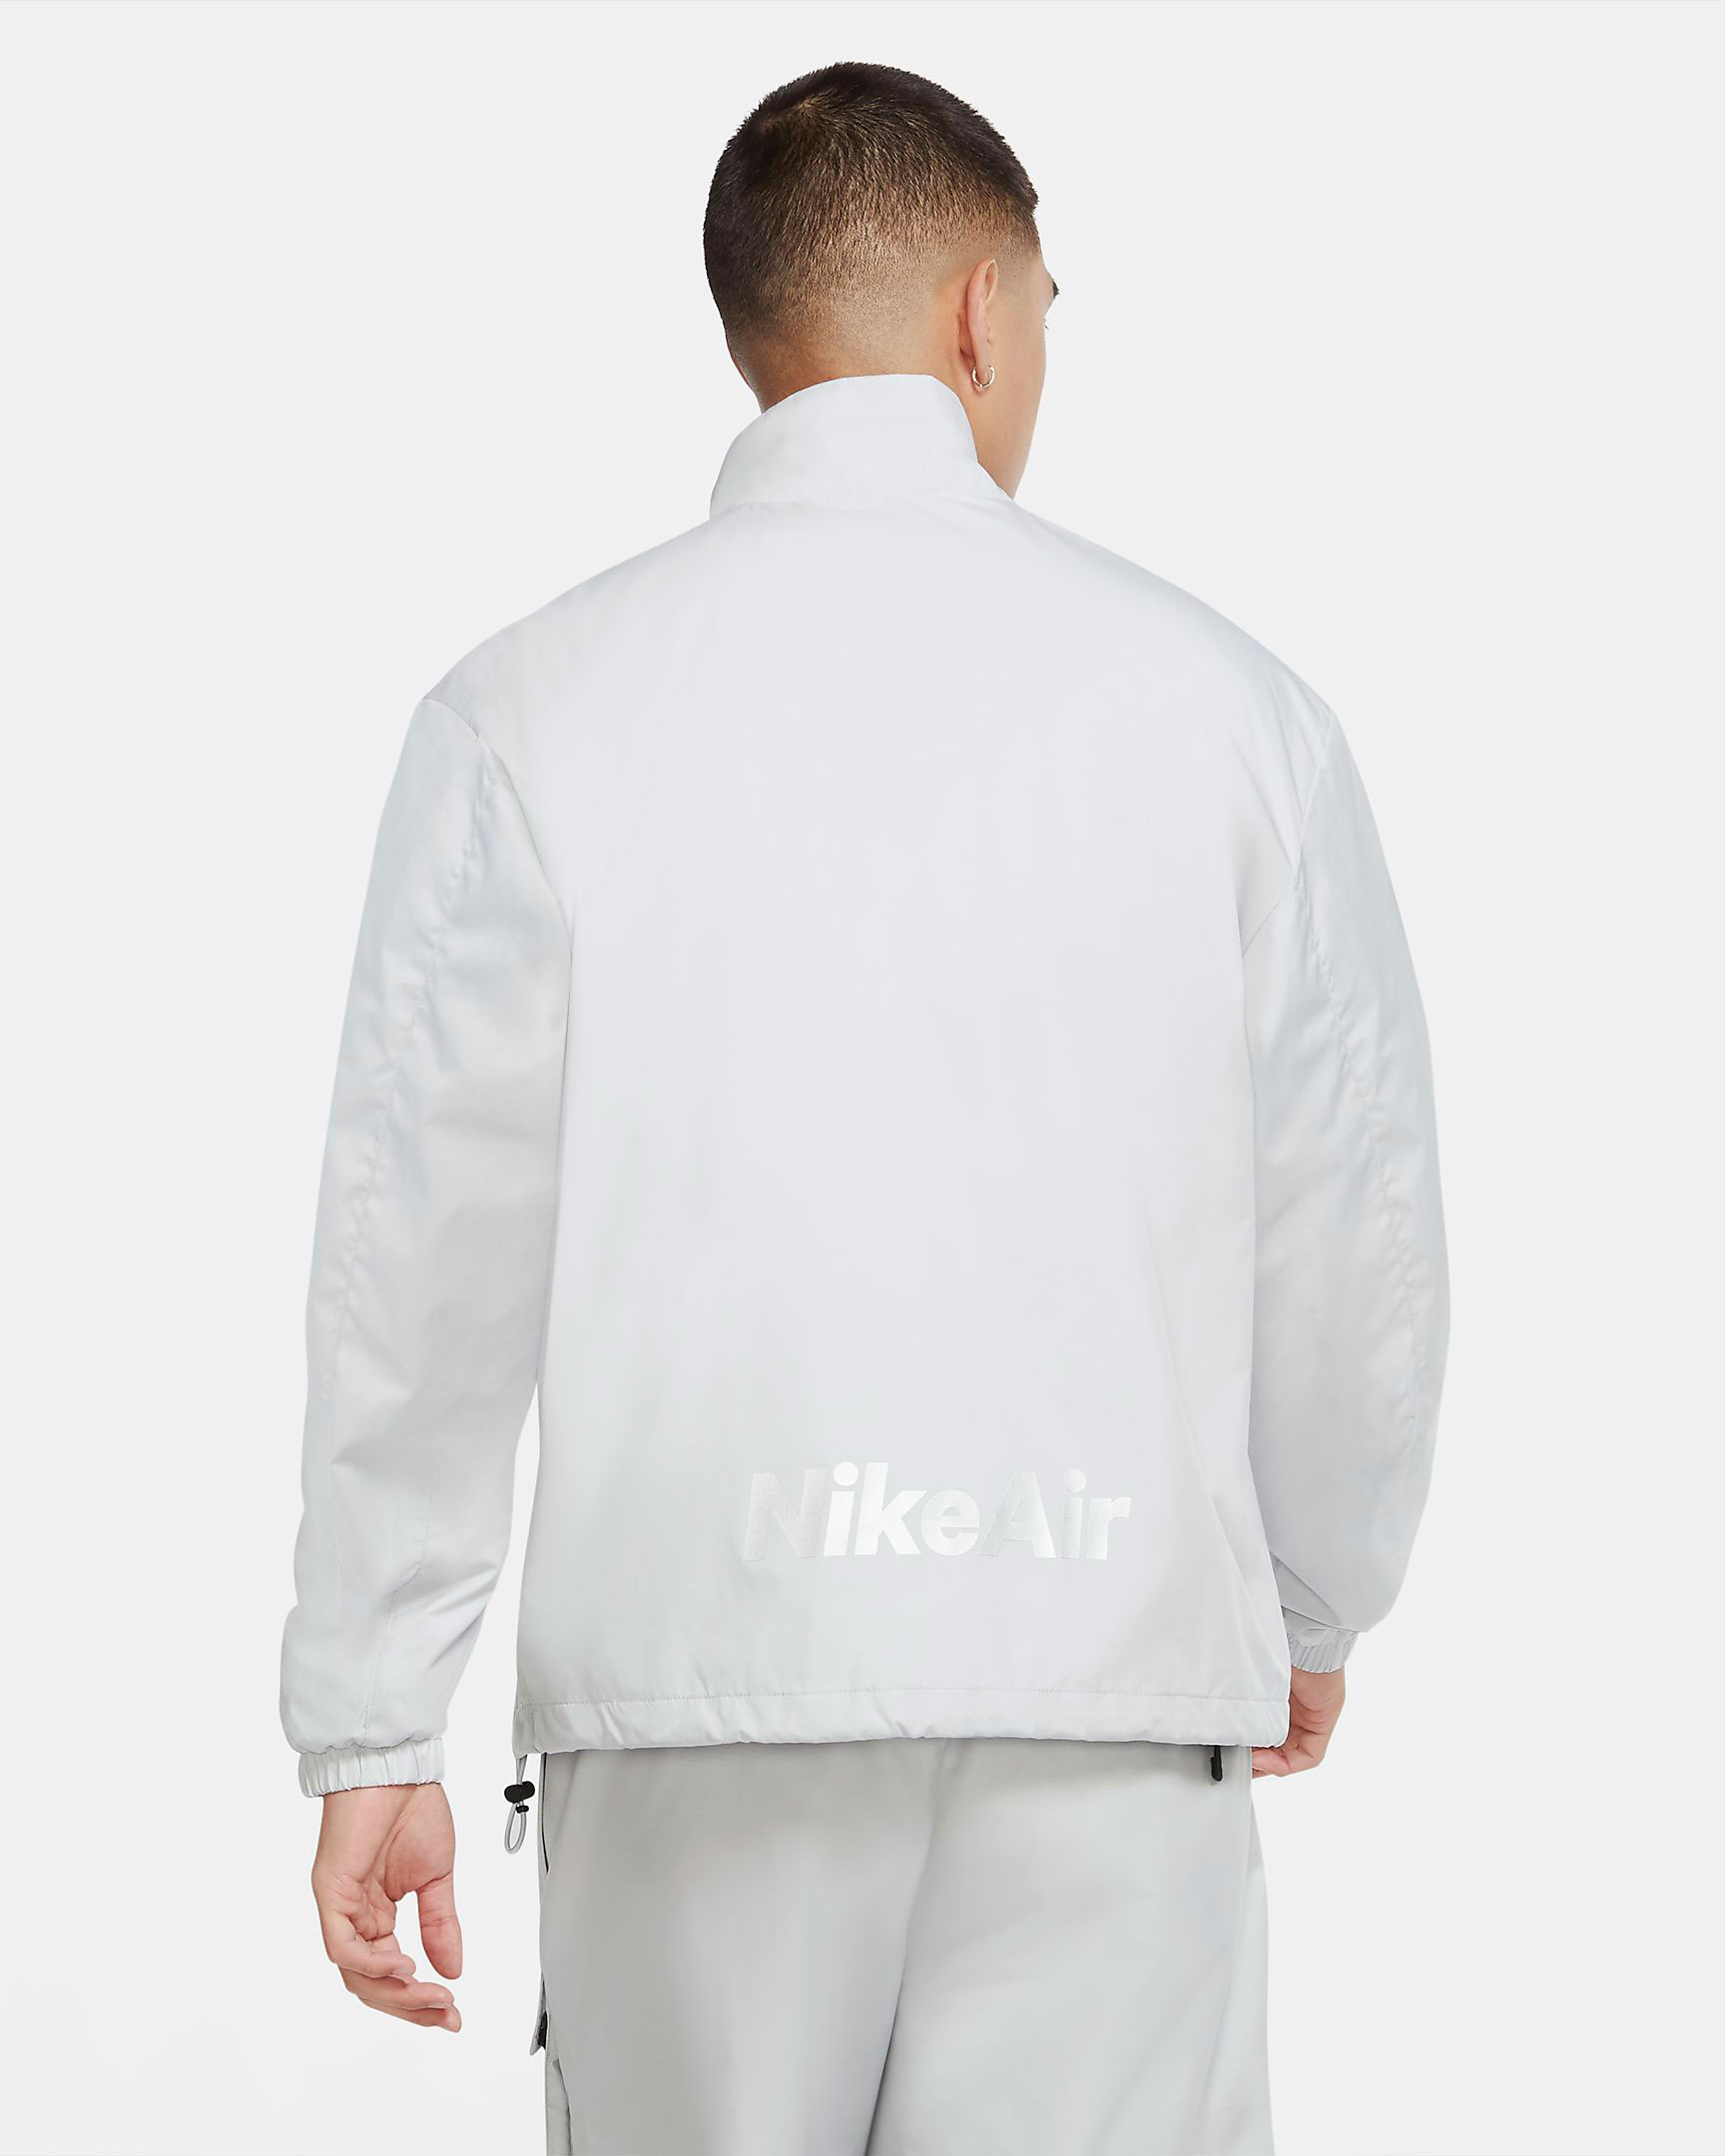 nike-air-jacket-grey-fog-laser-blue-2